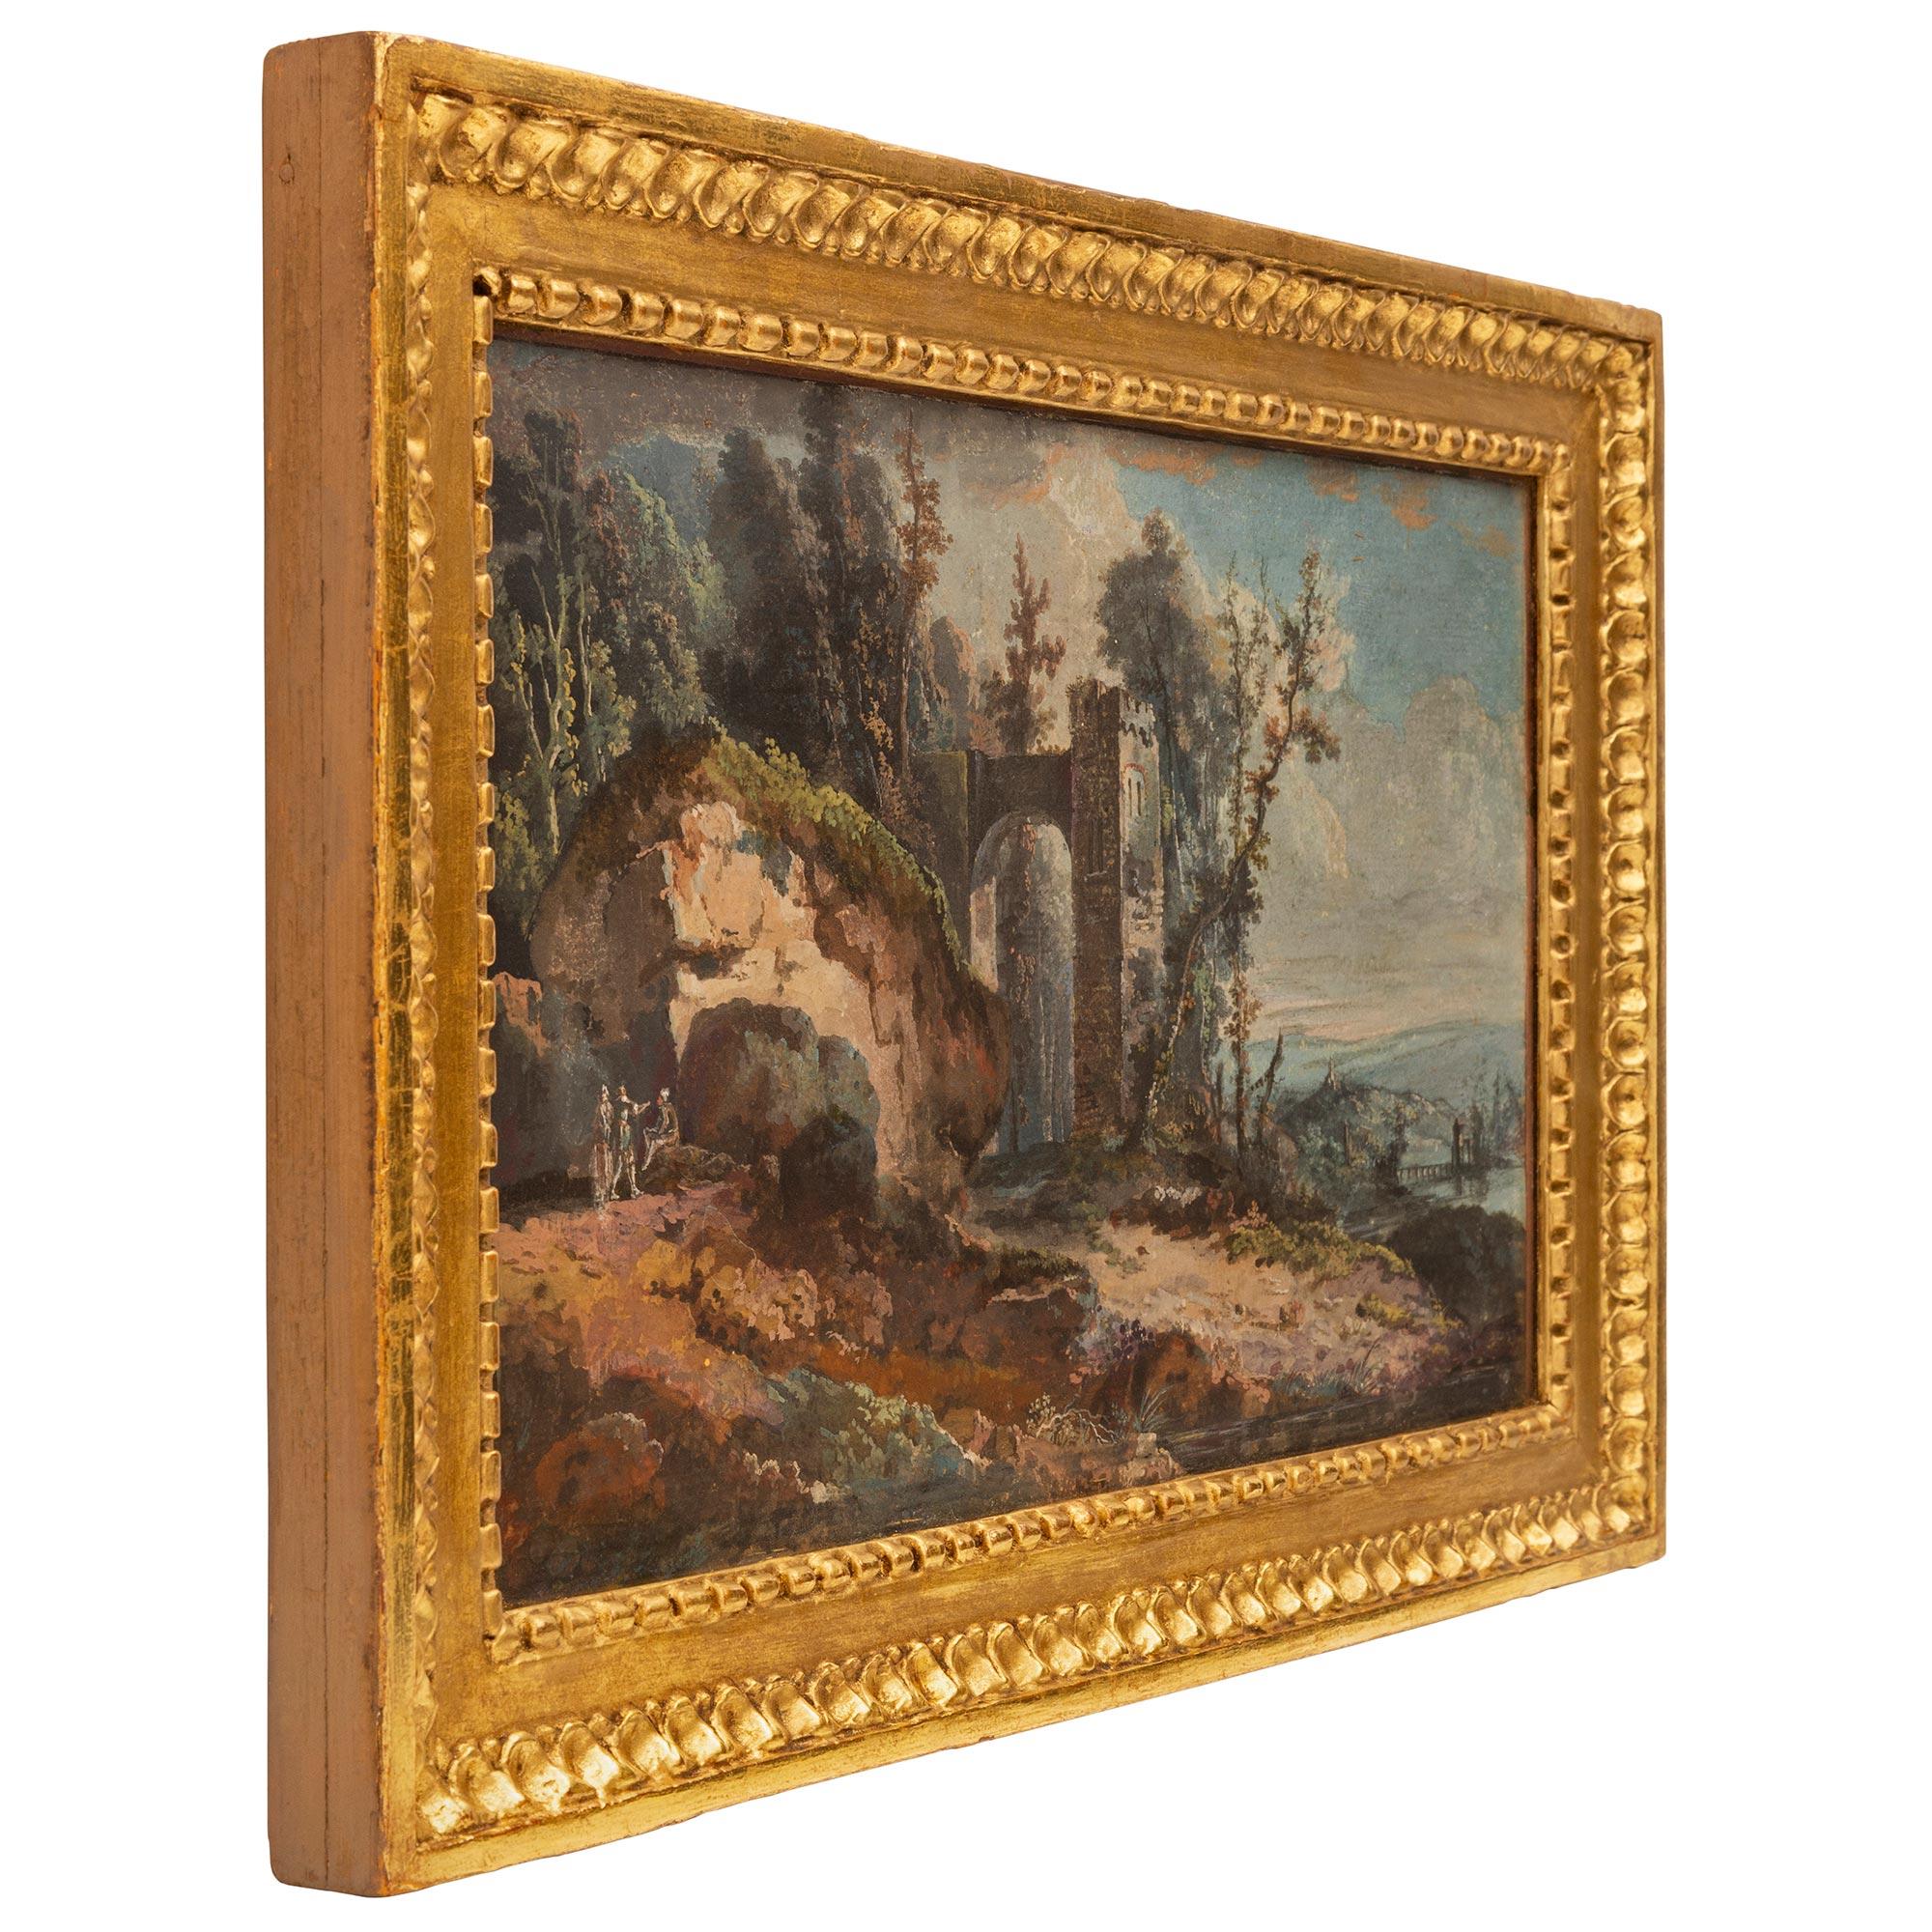 Eine charmante italienische Gouache aus dem 18. Jahrhundert aus der Louis-XVI-Periode in ihrem ursprünglichen Rahmen aus Goldholz. Das wunderbar ausgeführte Gemälde zeigt eine schöne italienische Landschaft mit Personen, die sich neben einem großen